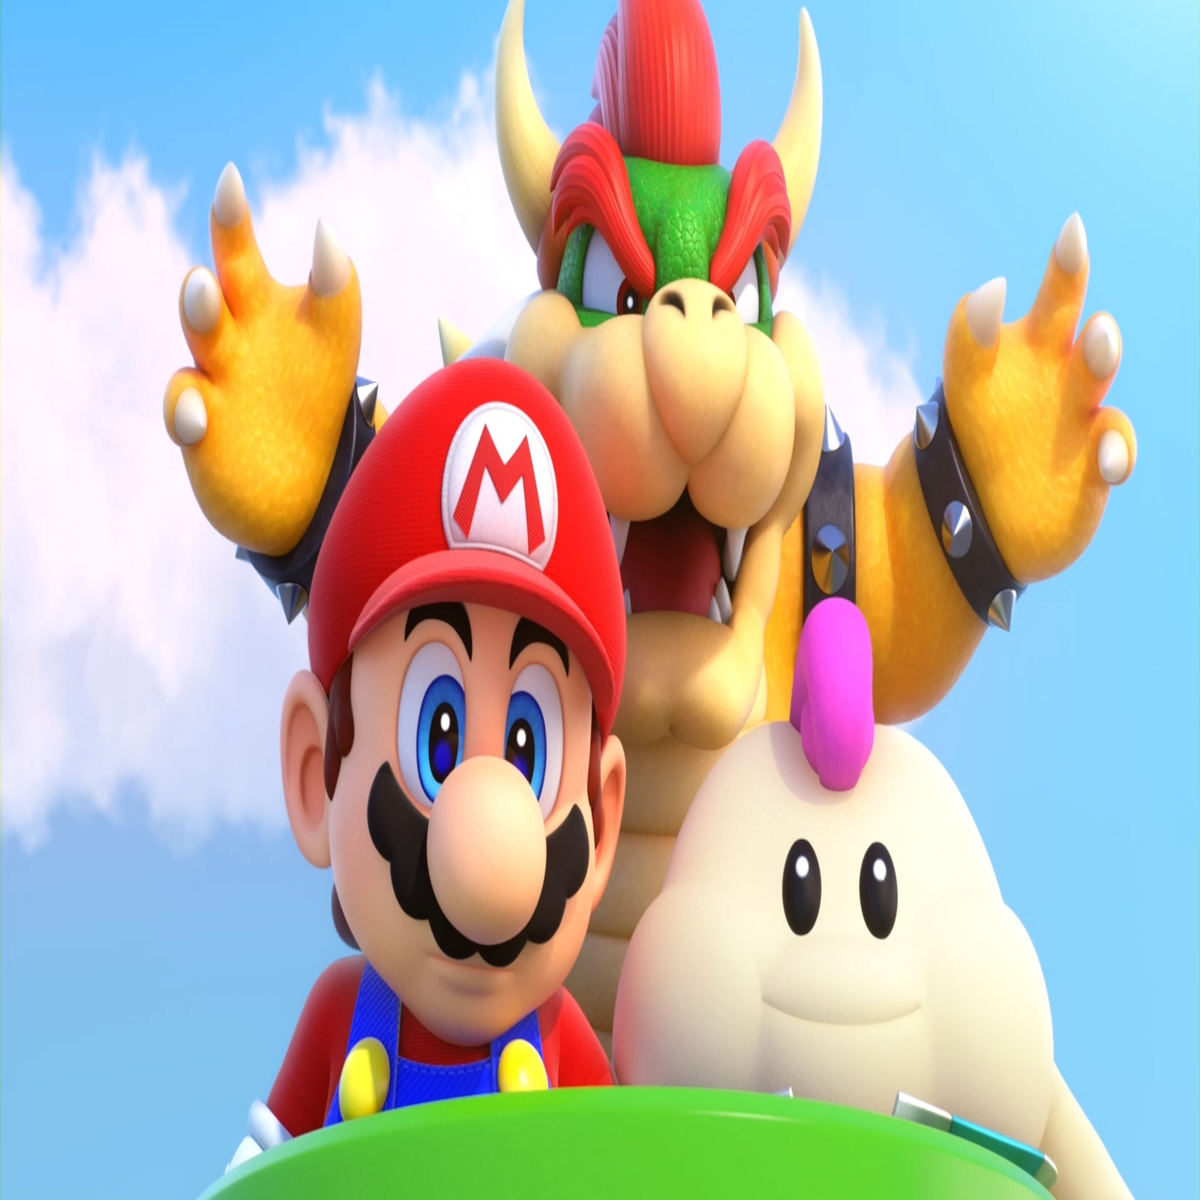 Super Mario RPG im Test - Der perfekte Abschluss für das Switch-Jahr 2023